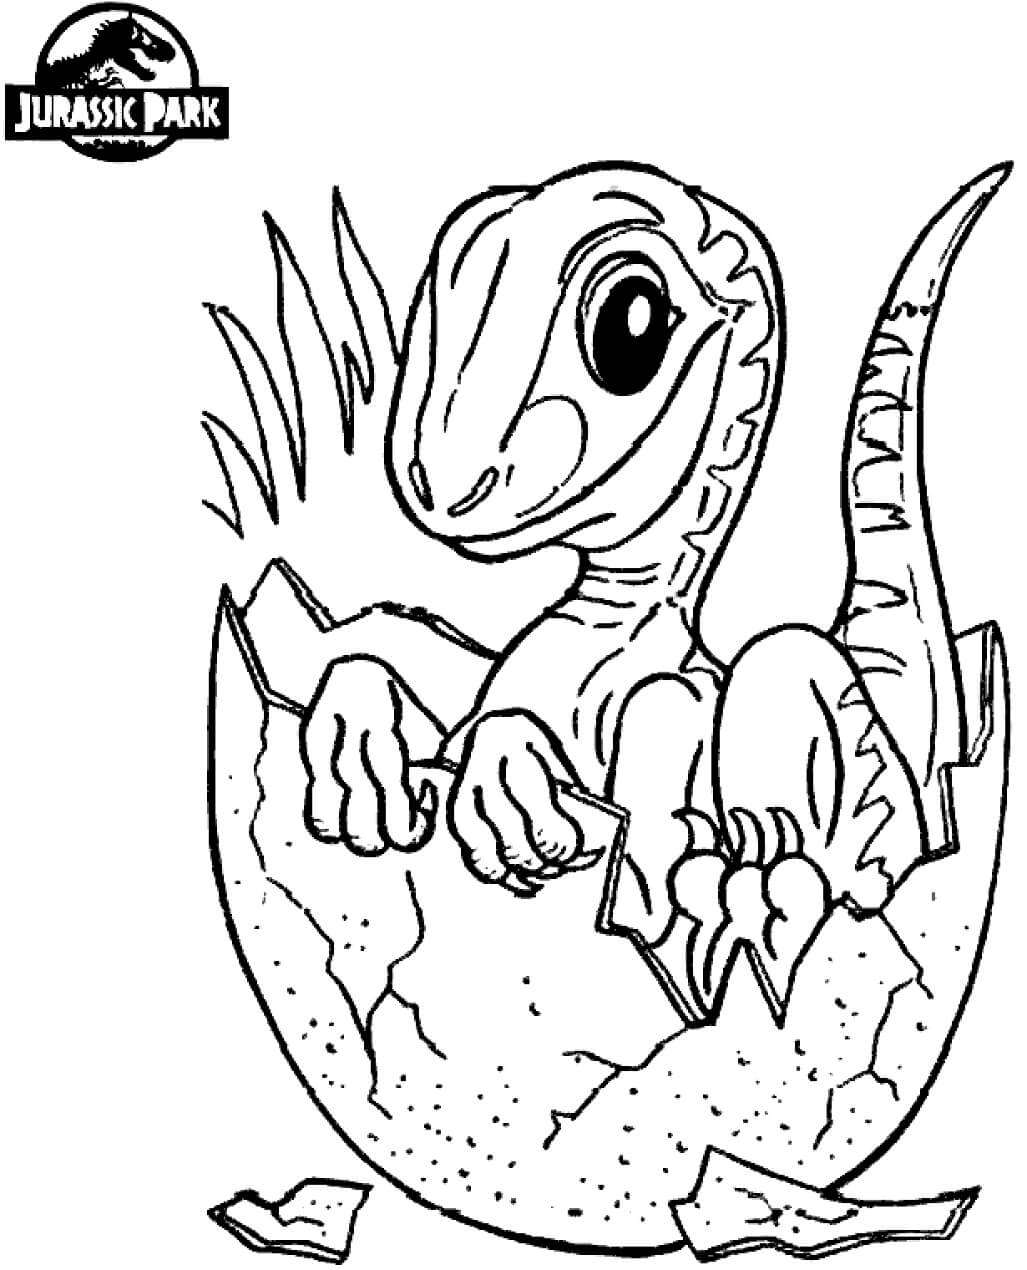 Bebé Dinosaurio en el Mundo Jurásico